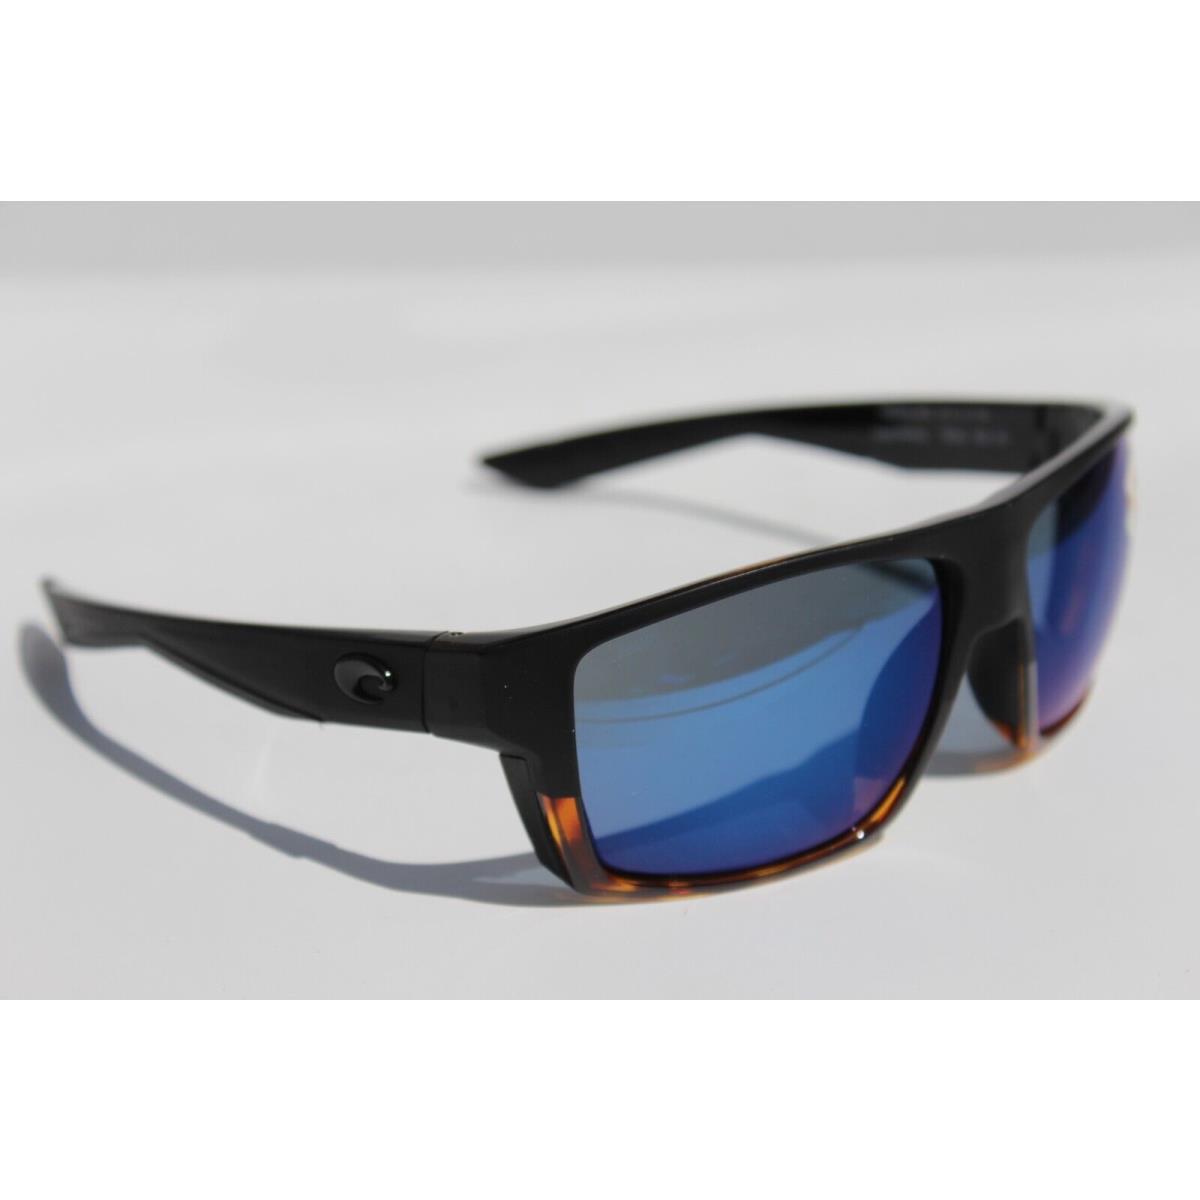 Costa Del Mar sunglasses  - Black Tortoise Frame, Blue Lens 2